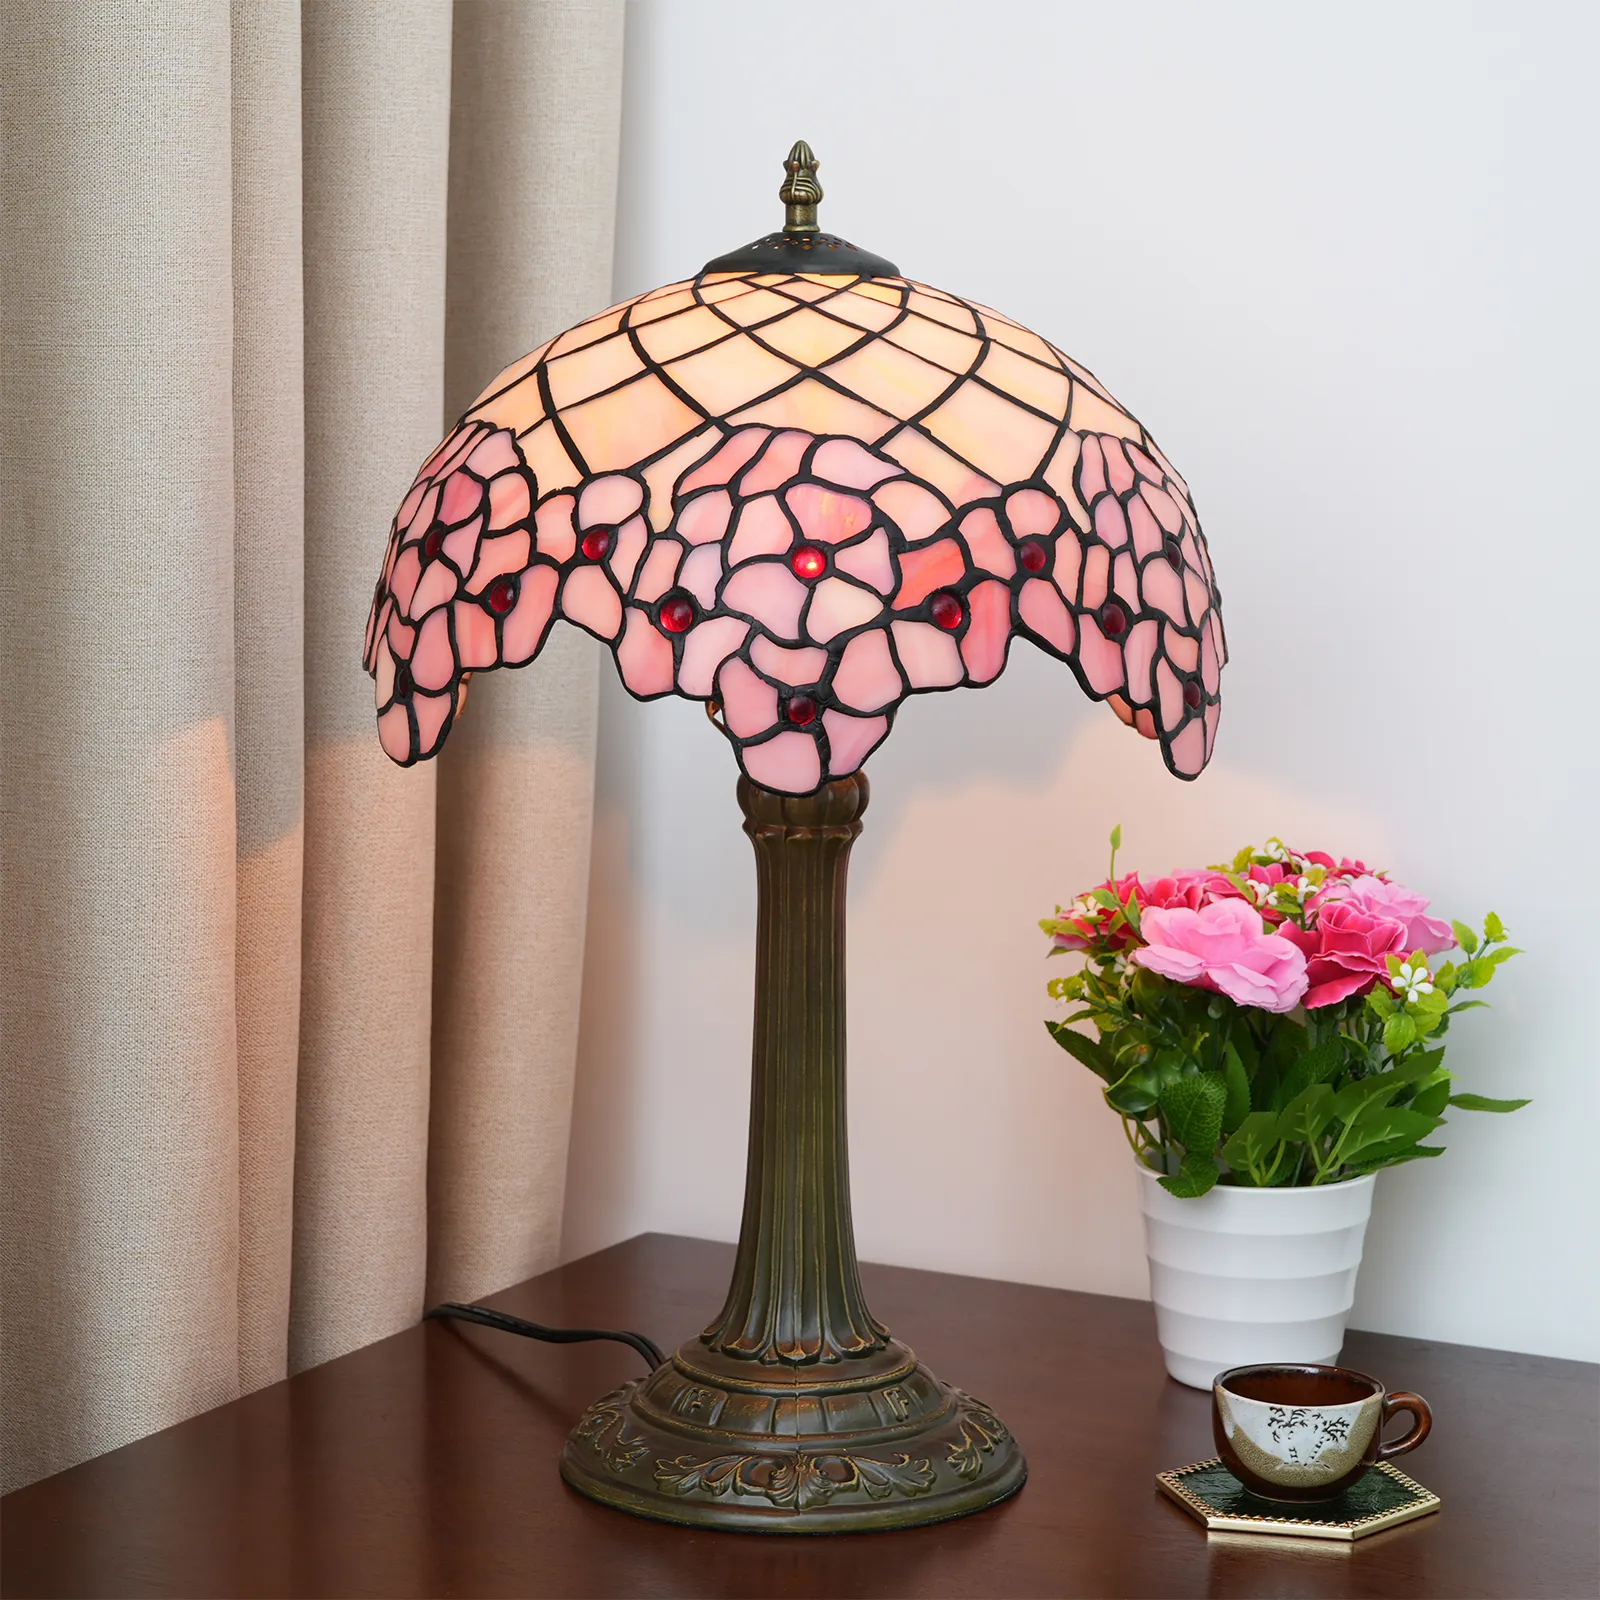 12 "ティファニーステンドグラステーブルランプアメリカンガーデンピンク桜寝室ベッドサイドロマンチックなデスクランプ